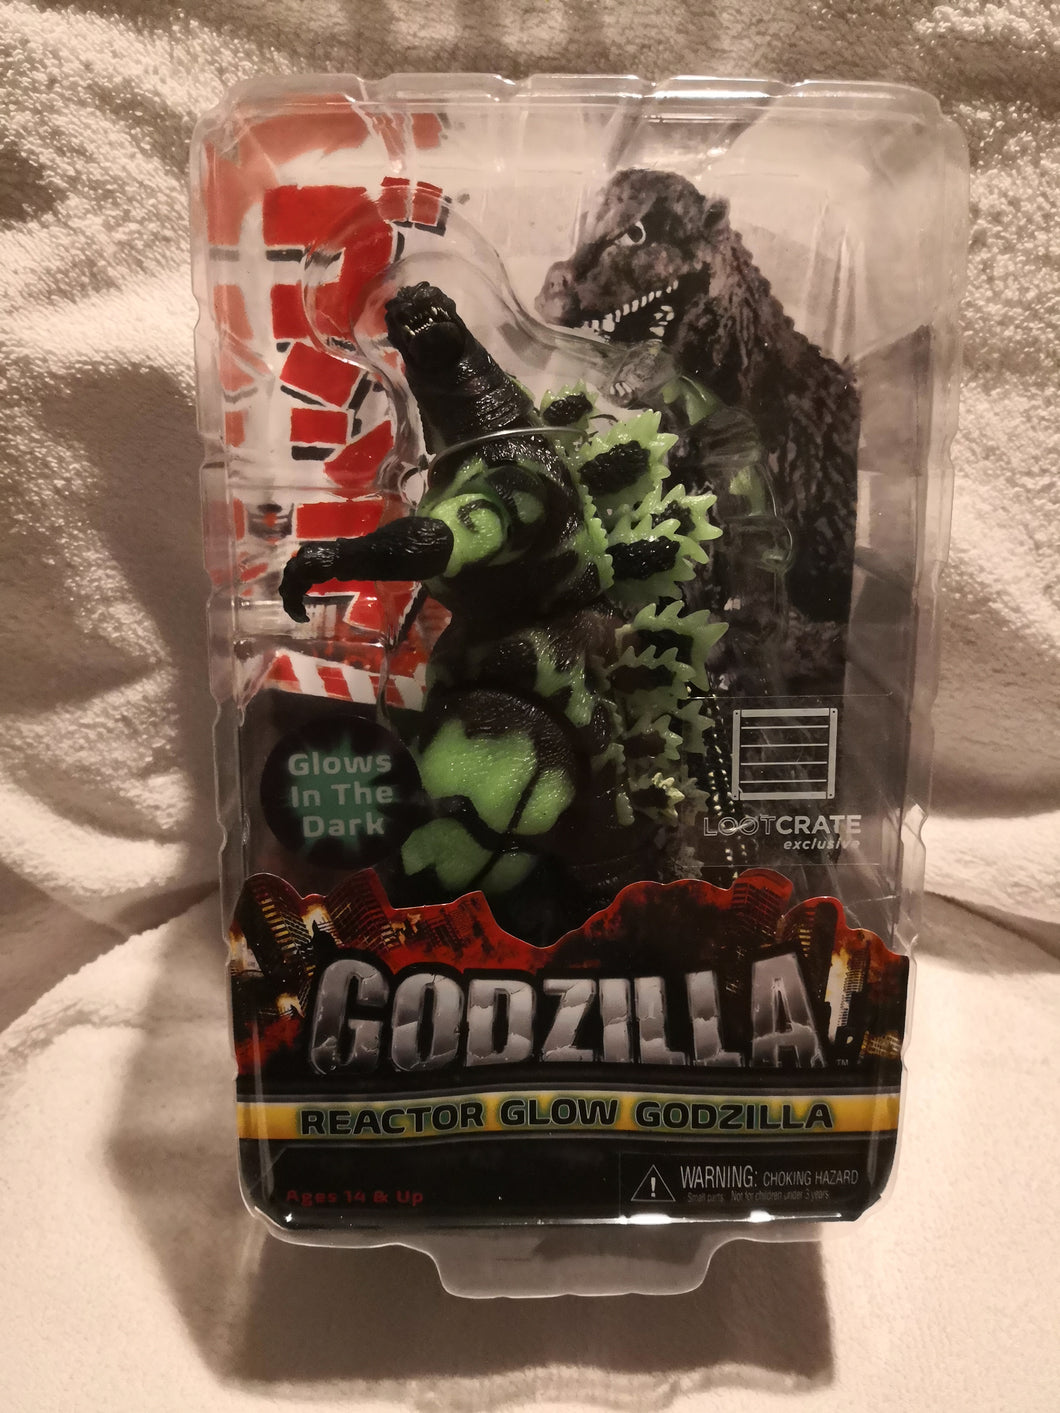 Reactor Glow Godzilla